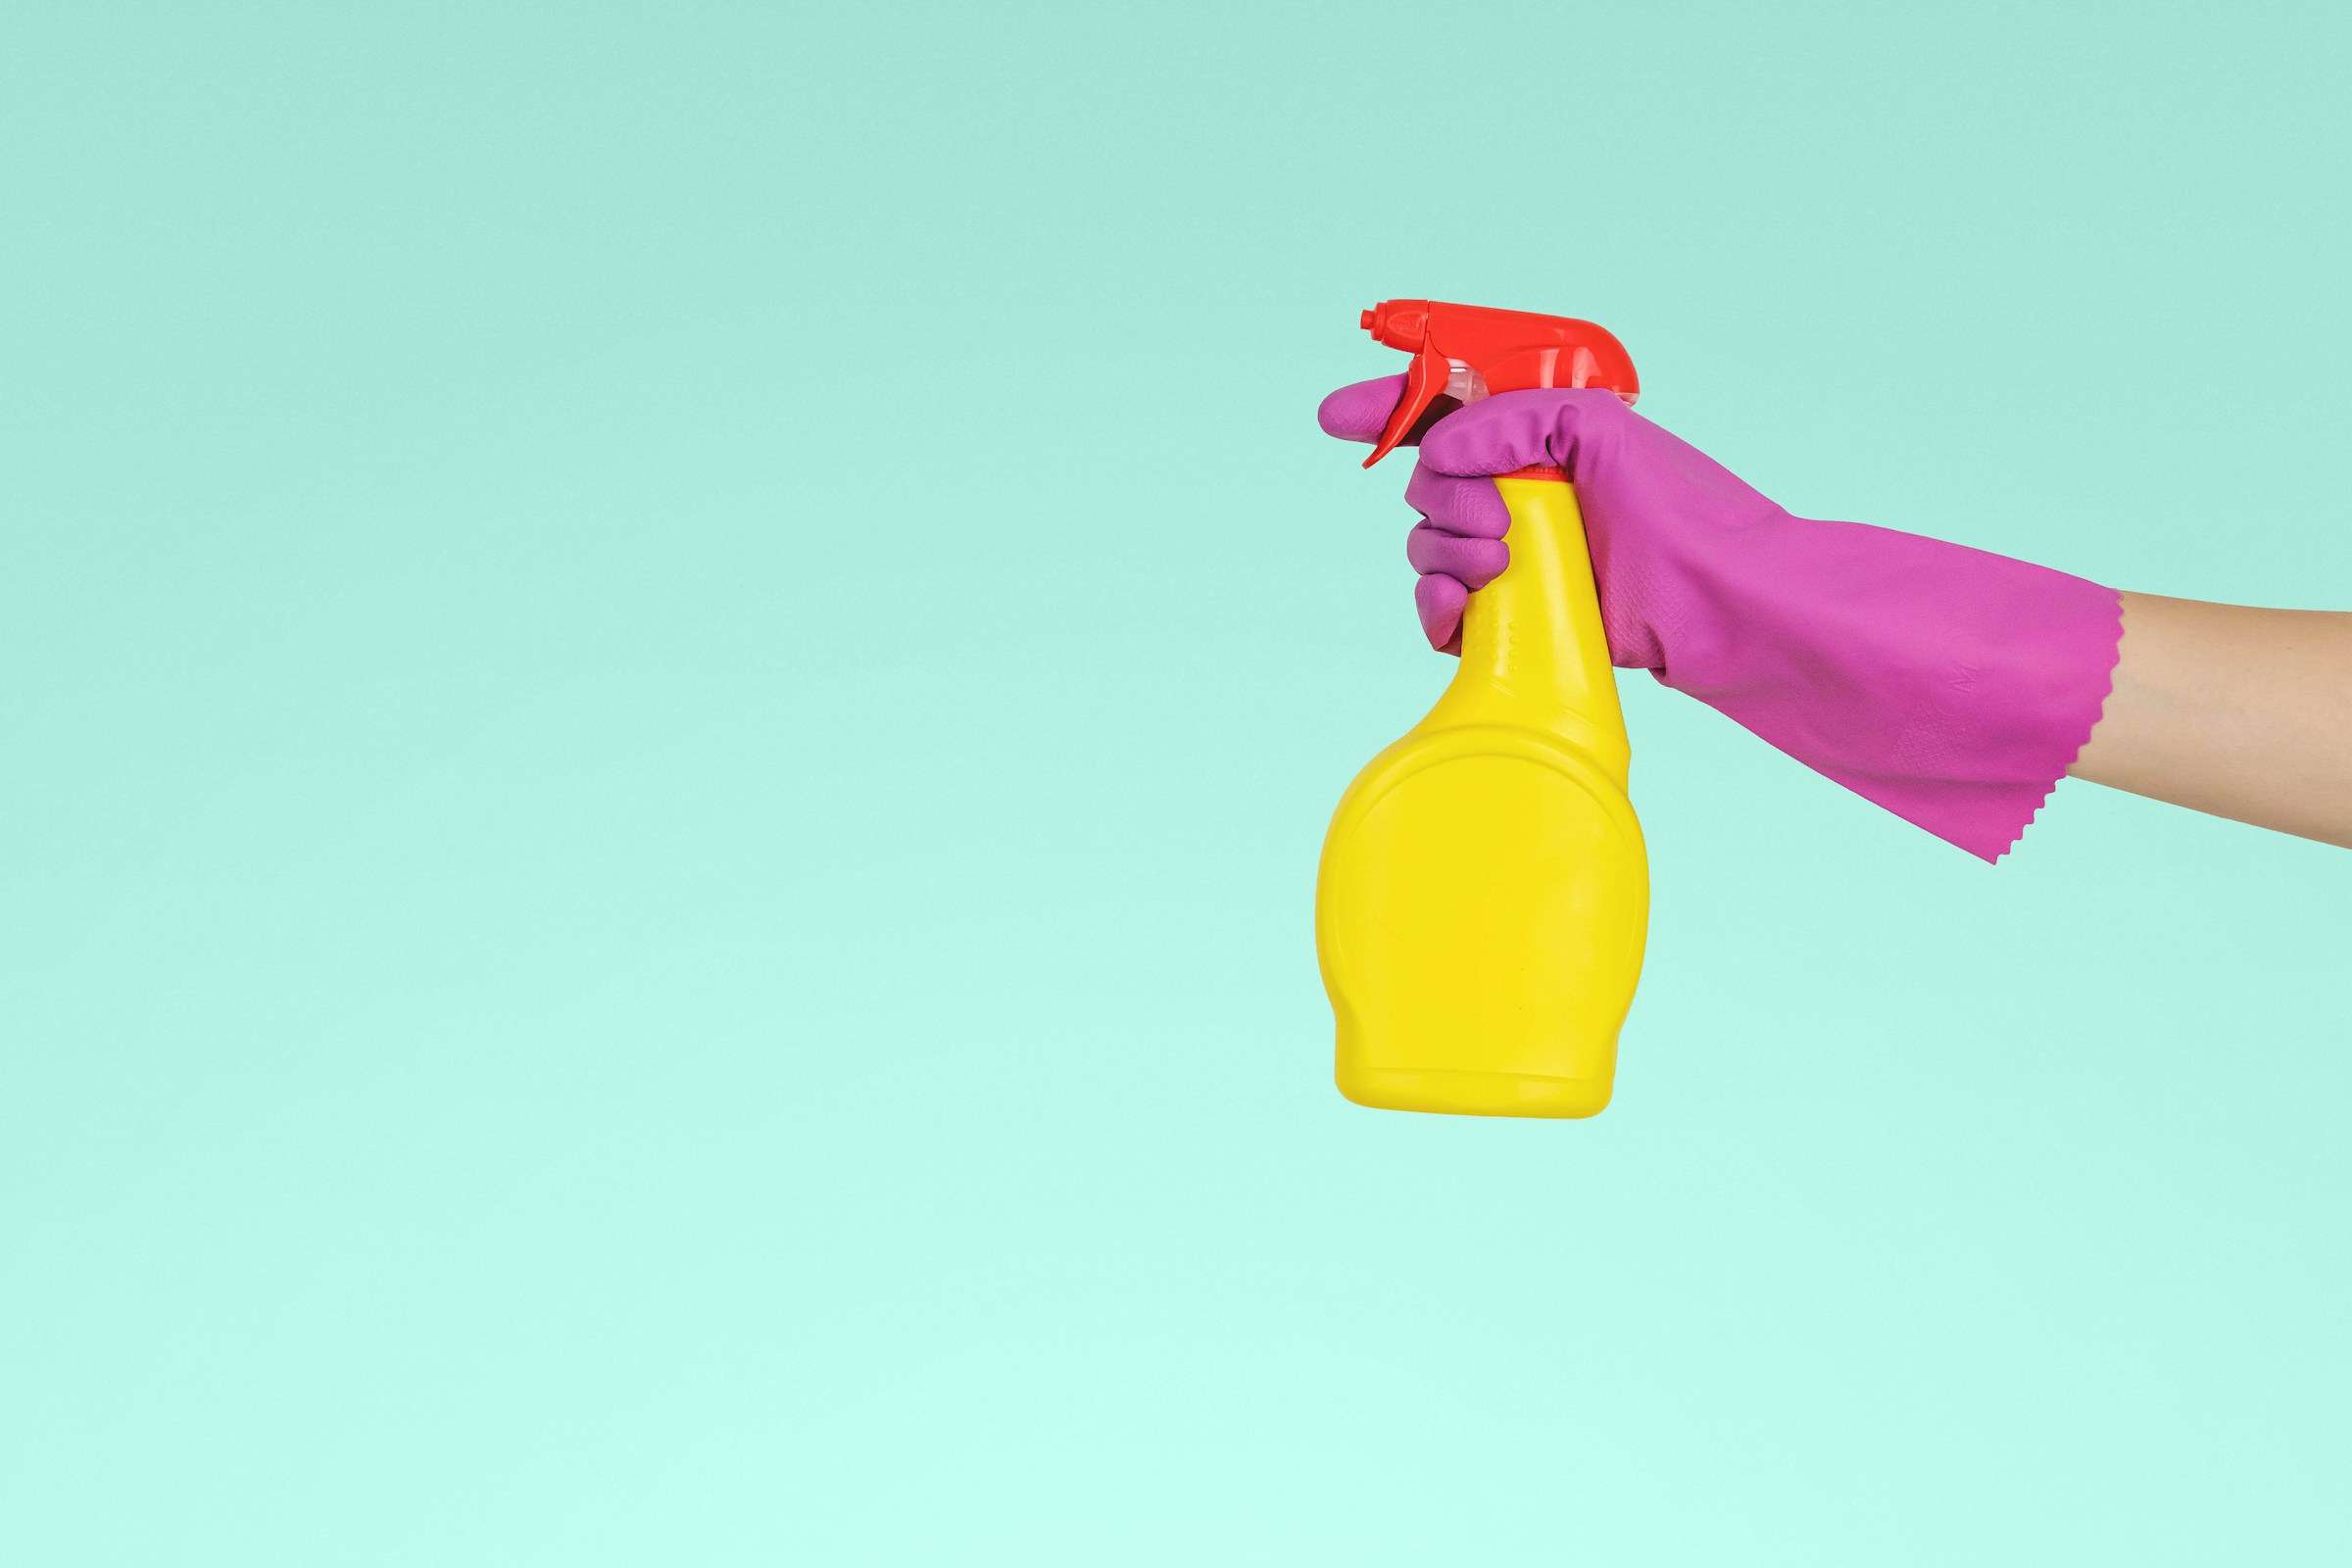 Une personne tenant un vaporisateur jaune | Source : Unsplash